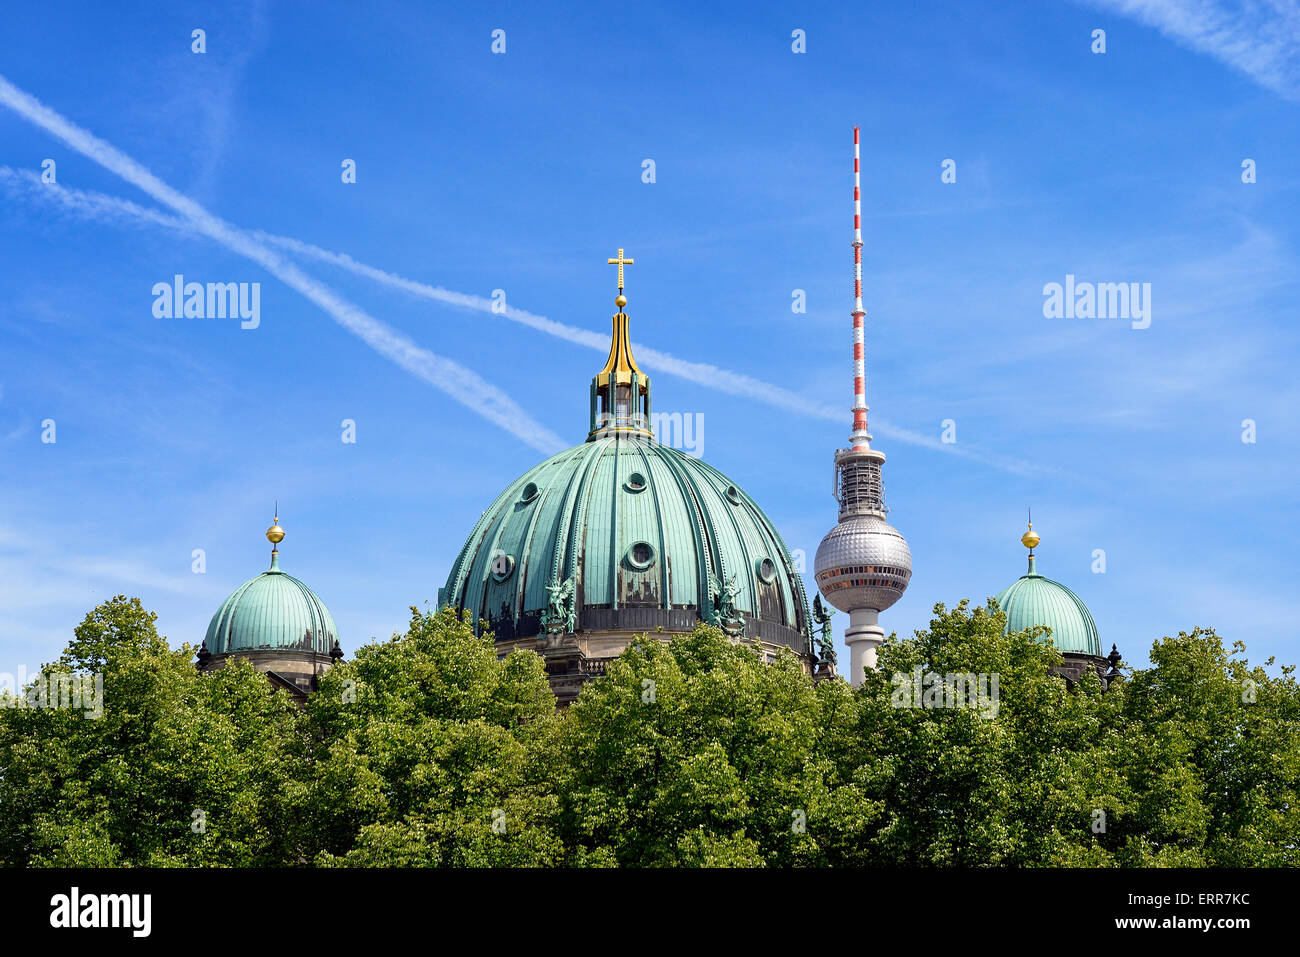 Germania, Berlino, quartiere Mitte, il Museo Island, elencato come patrimonio mondiale dell'UNESCO, Berliner Dom cupole e la torre della TV. Foto Stock